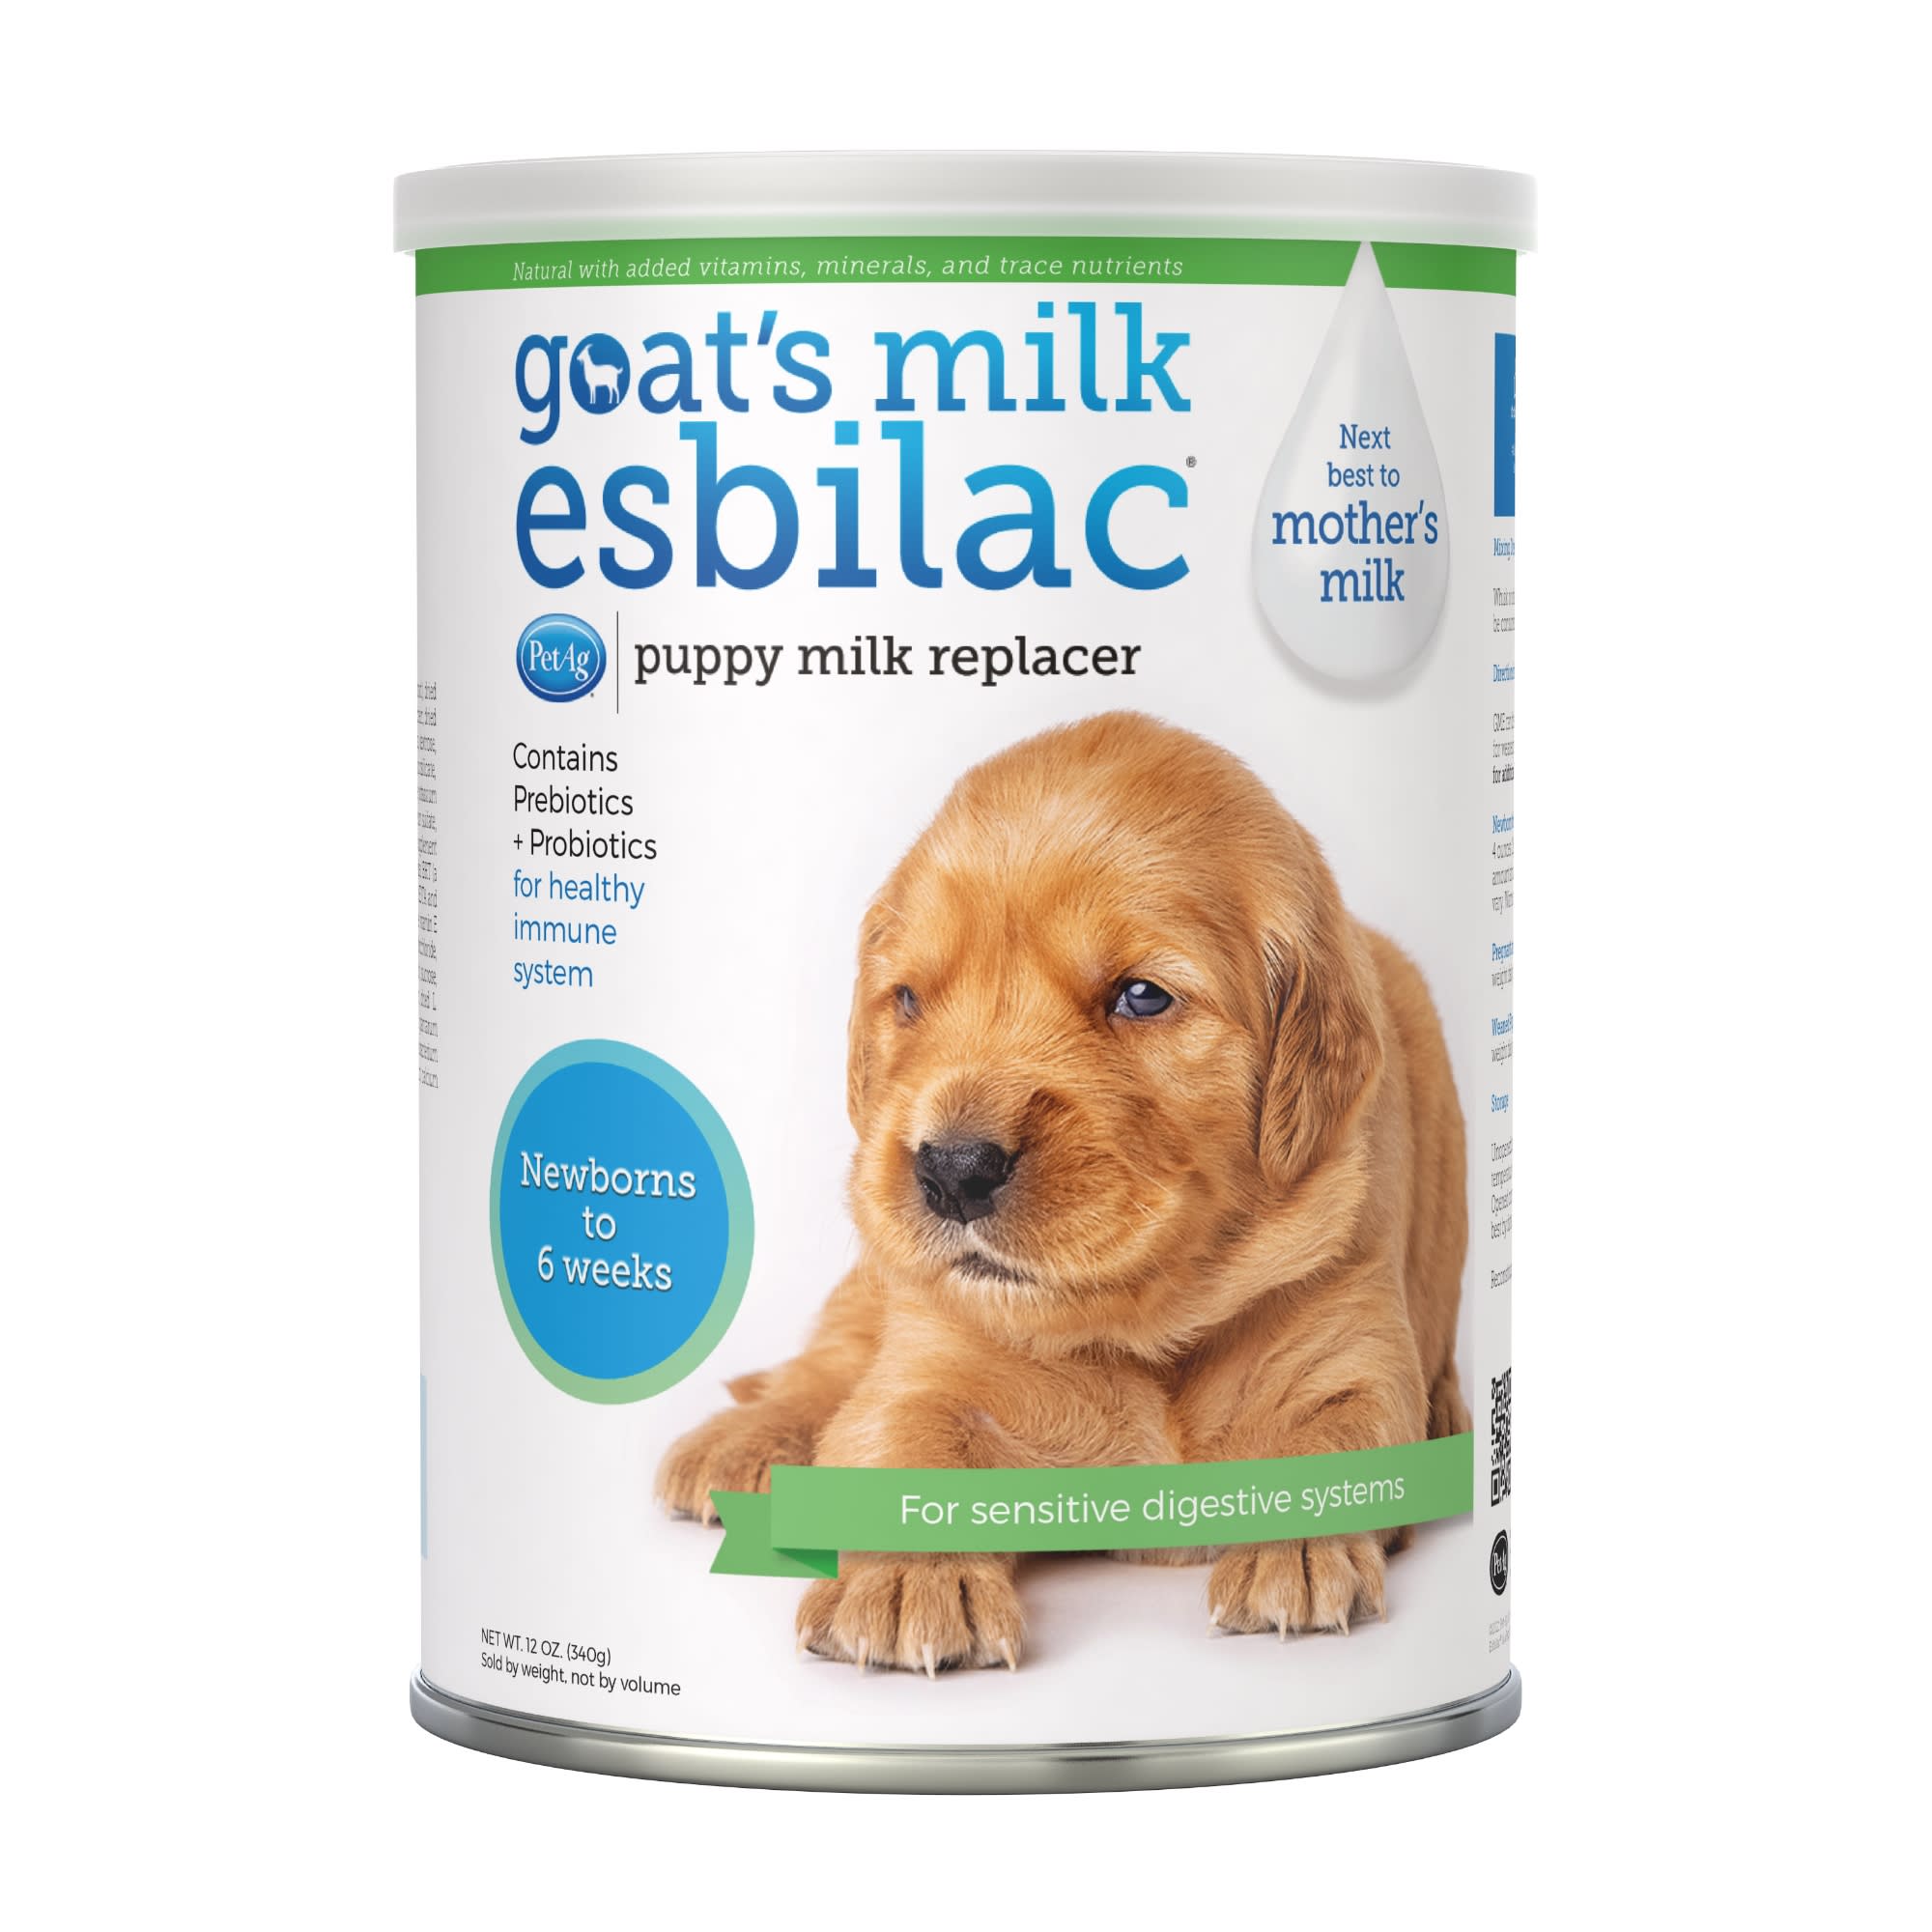 Photos - Dog Medicines & Vitamins PetAg PetAg Goats Milk Esbilac Powder for Puppies, 12 OZ 99460